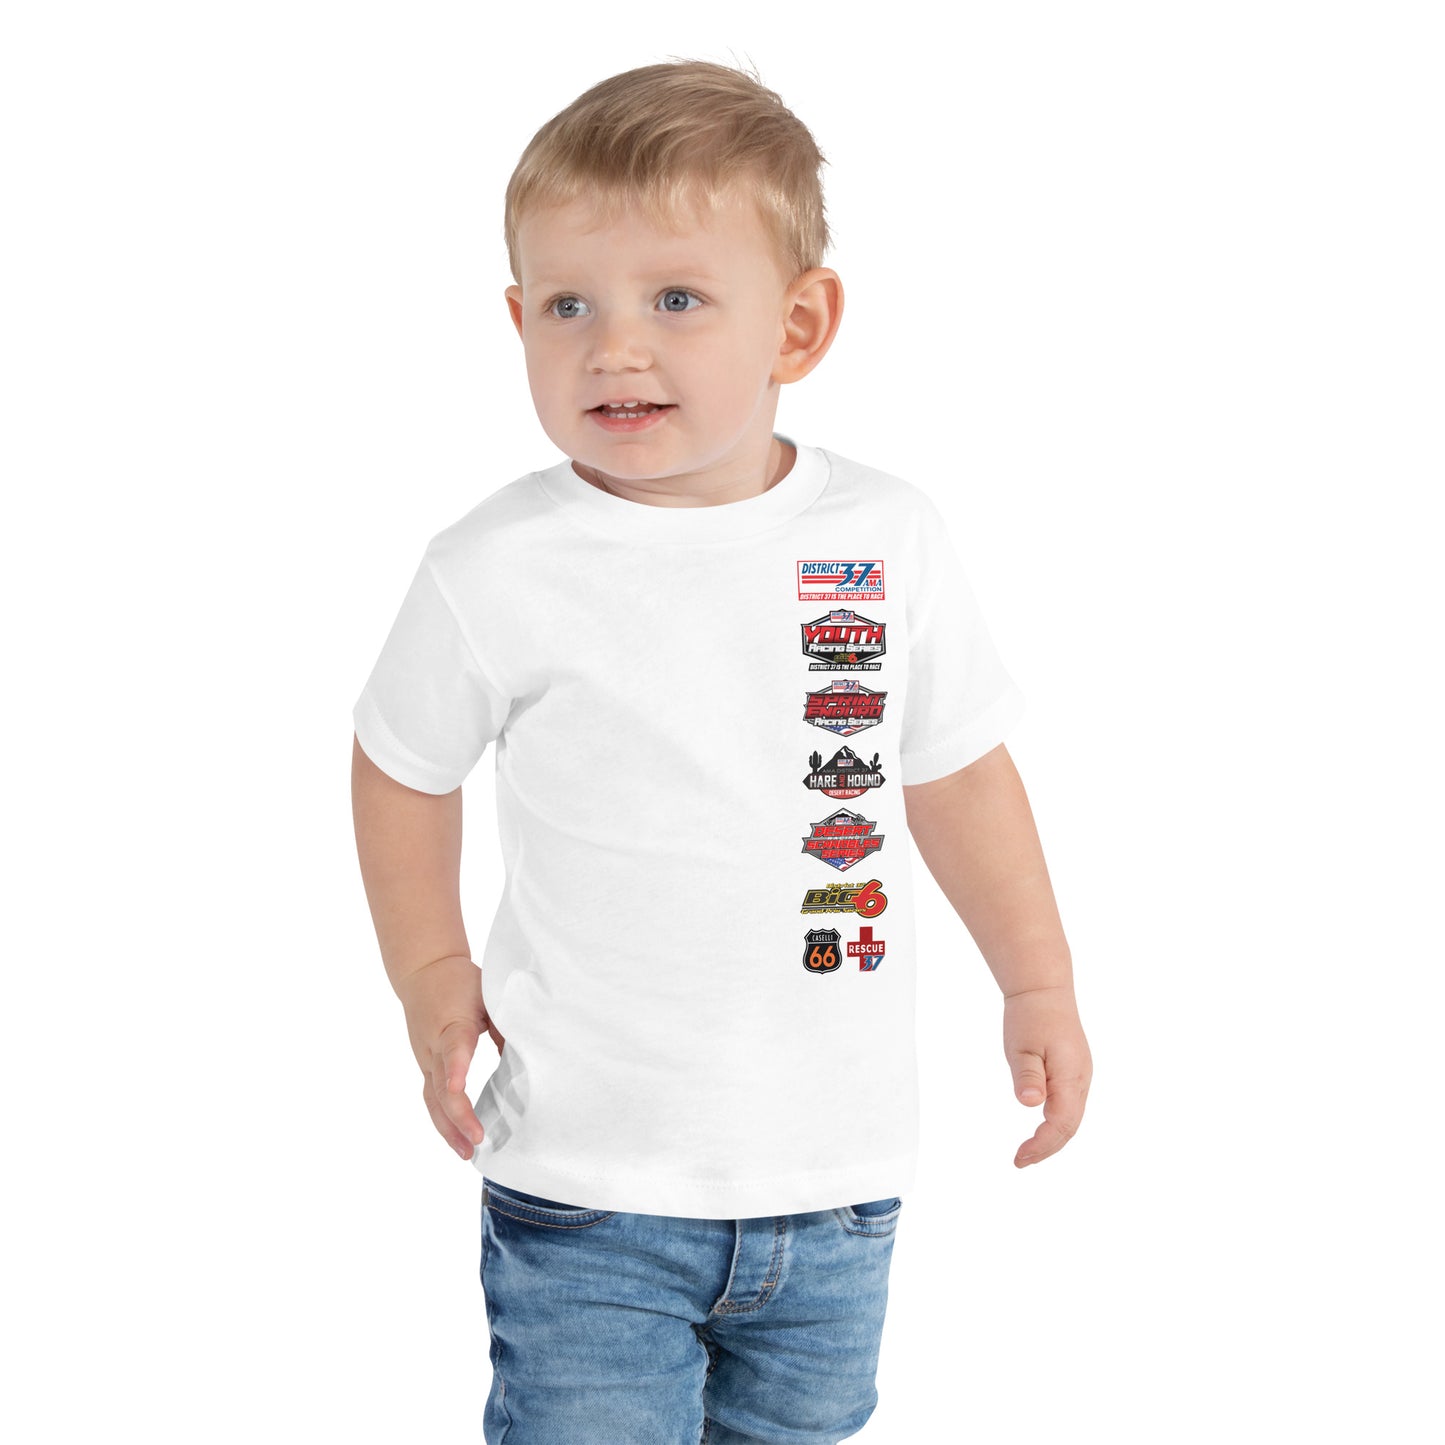 D37 Big 6 Grand Prix Series Shirt - Toddler Size Shirt